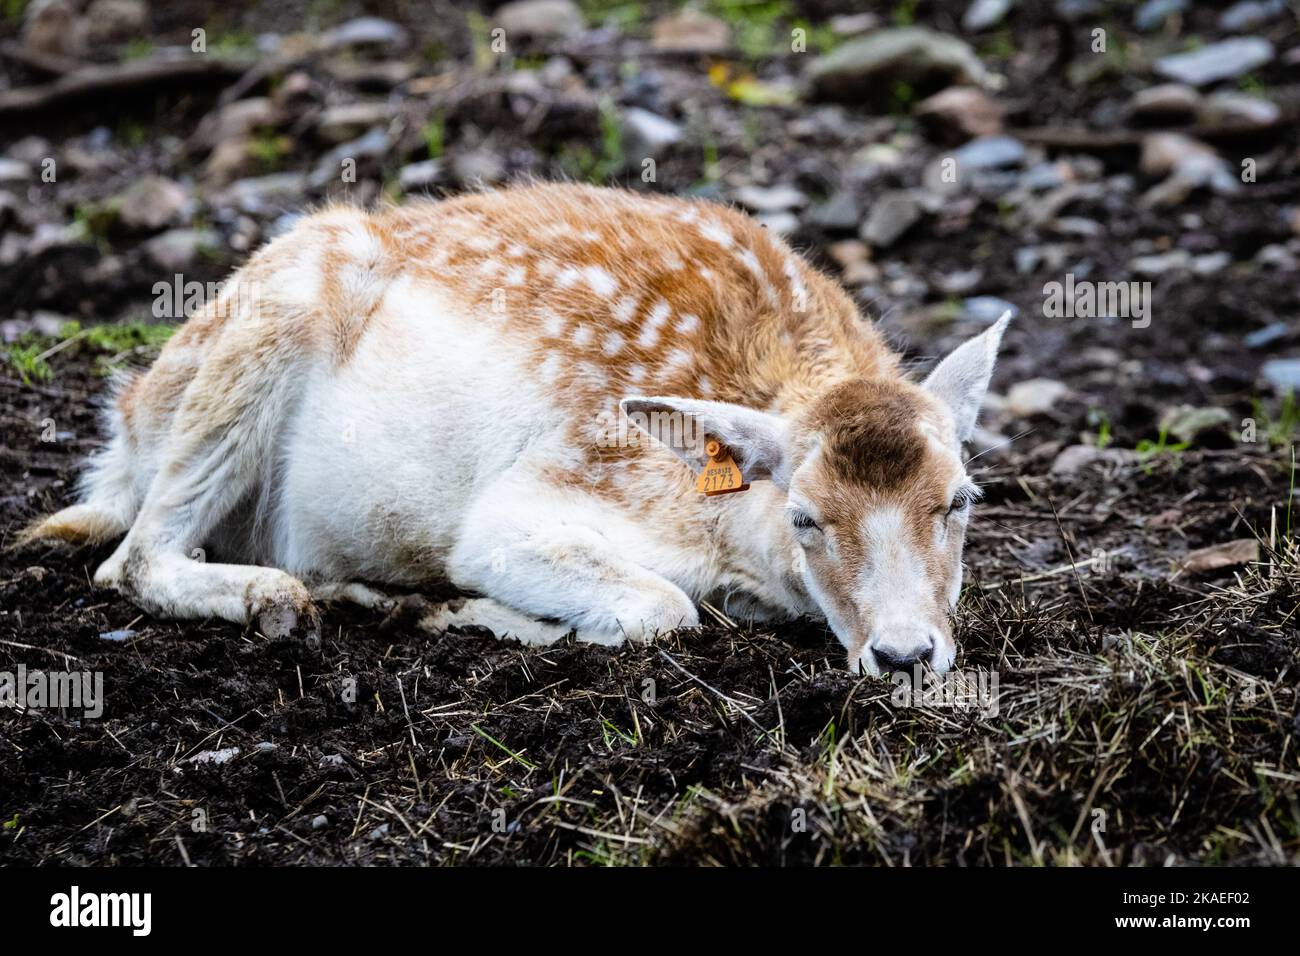 Un primer plano de una gama (ciervo en barbecho europeo) durmiendo en el suelo en una granja Foto de stock